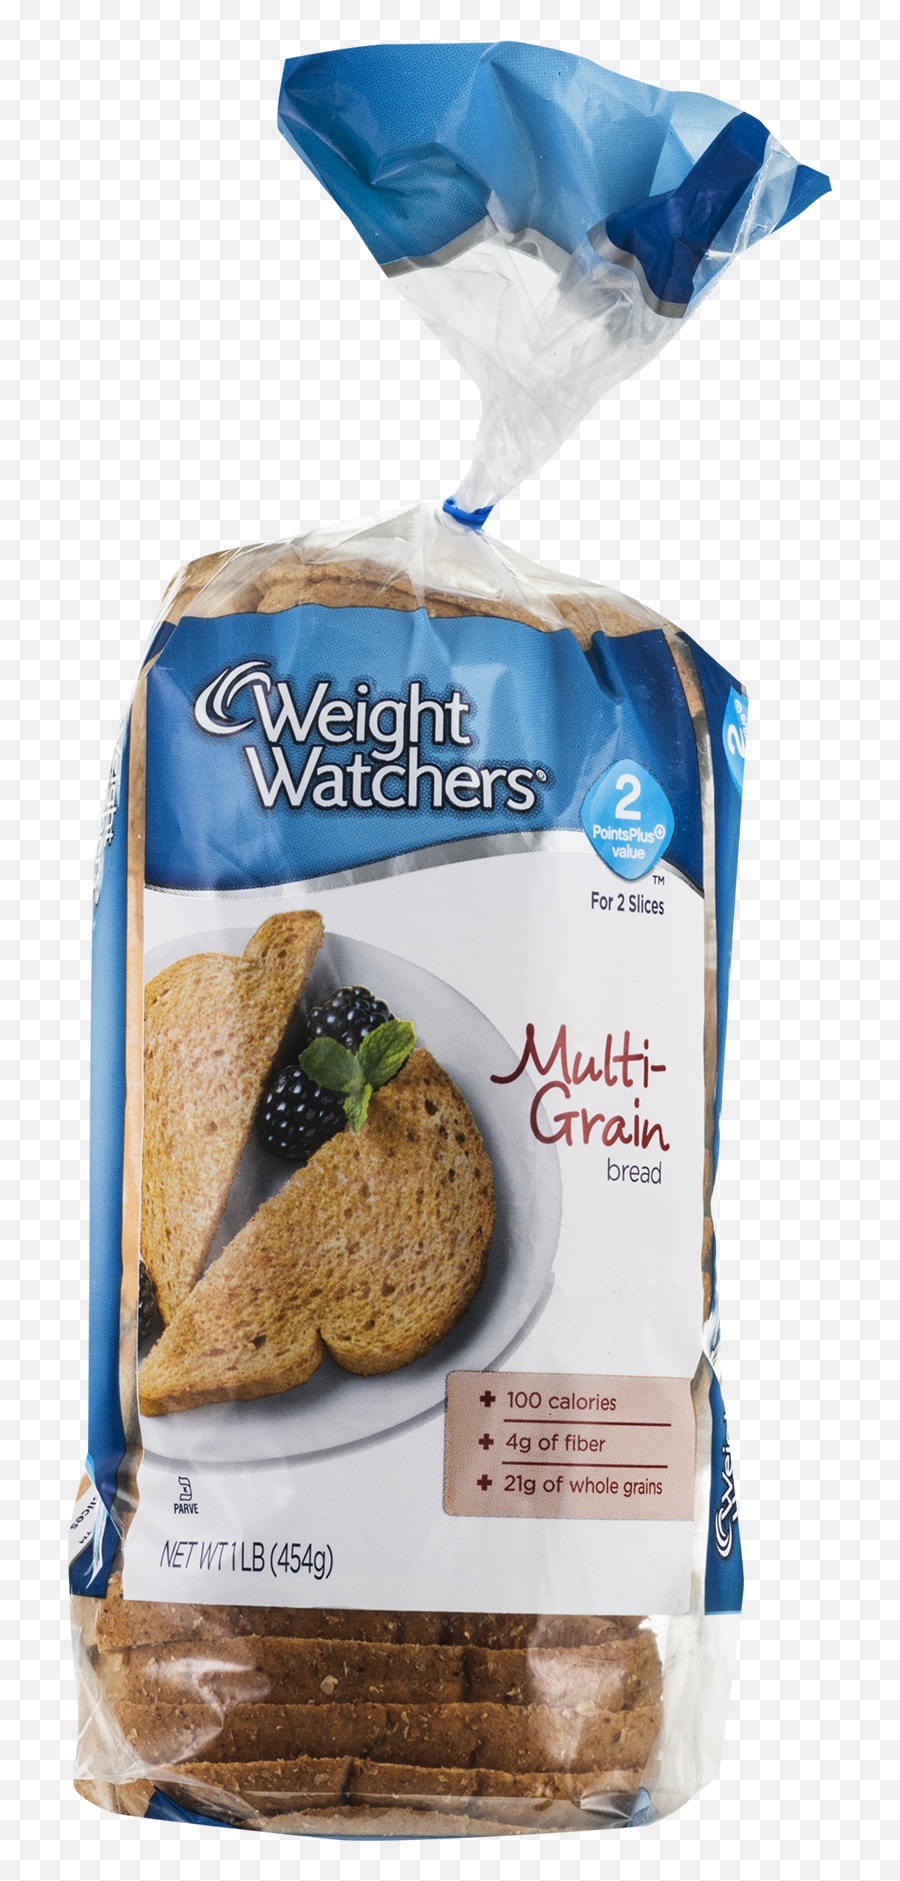 Weight Watchers Weight Watchers Bread - Weight Watchers Bread Emoji,Grain Bread Pasta Emojis